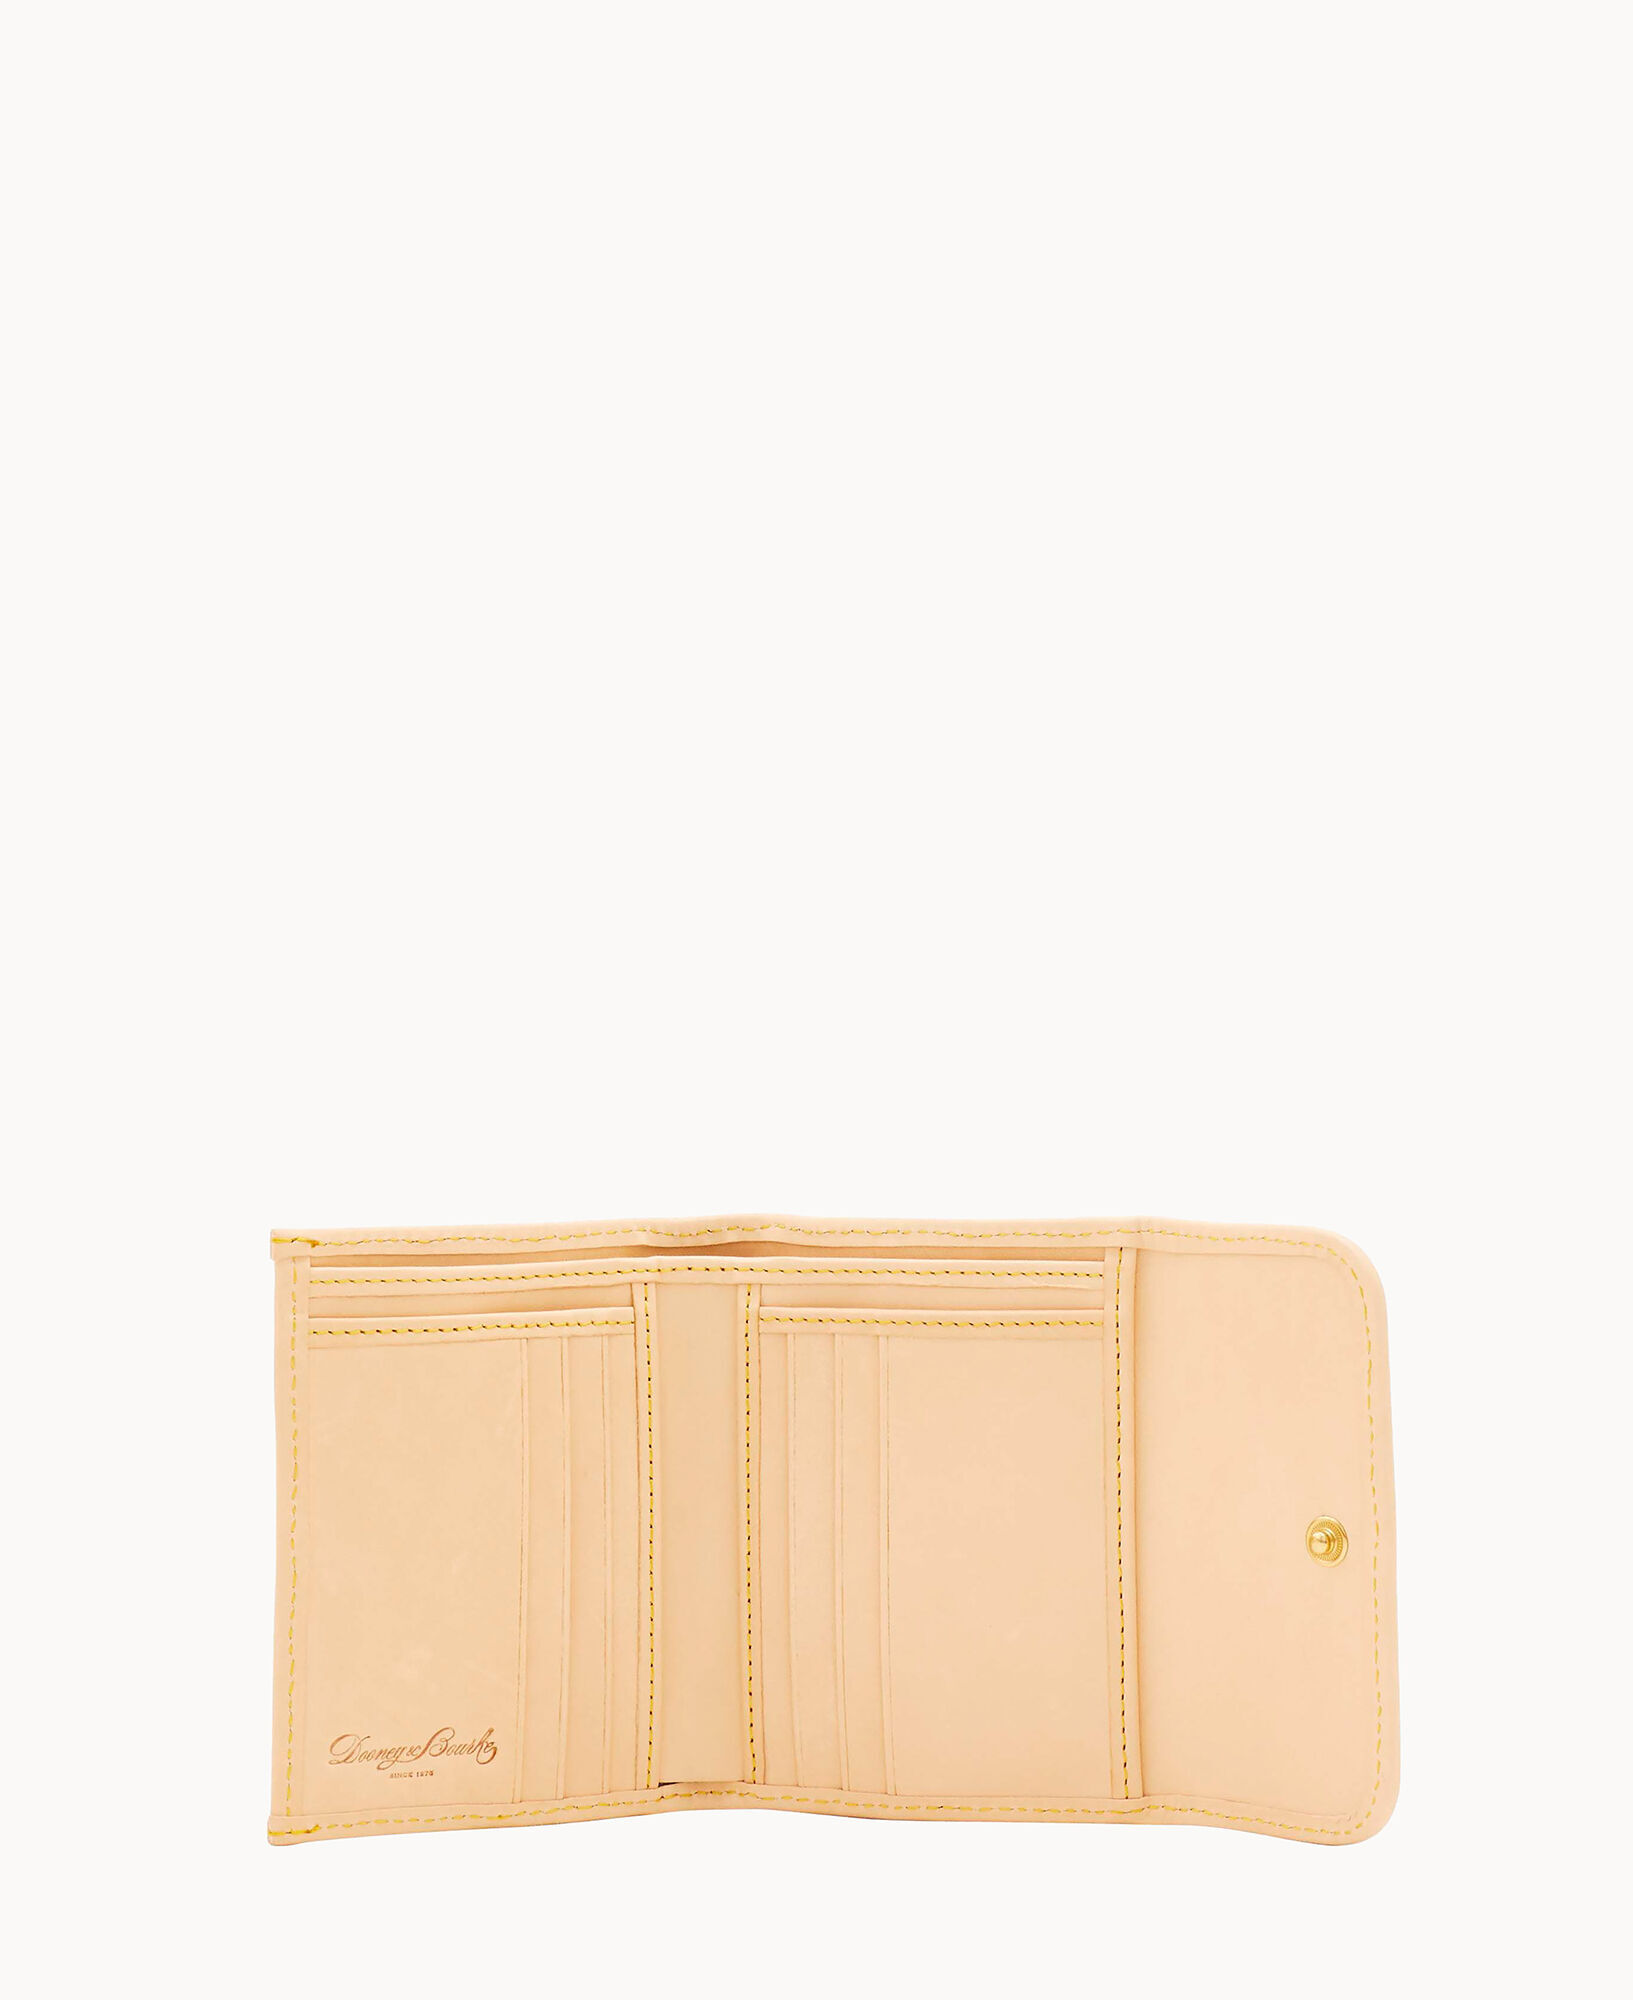 Dooney & Bourke Monogram Small Flap Wallet